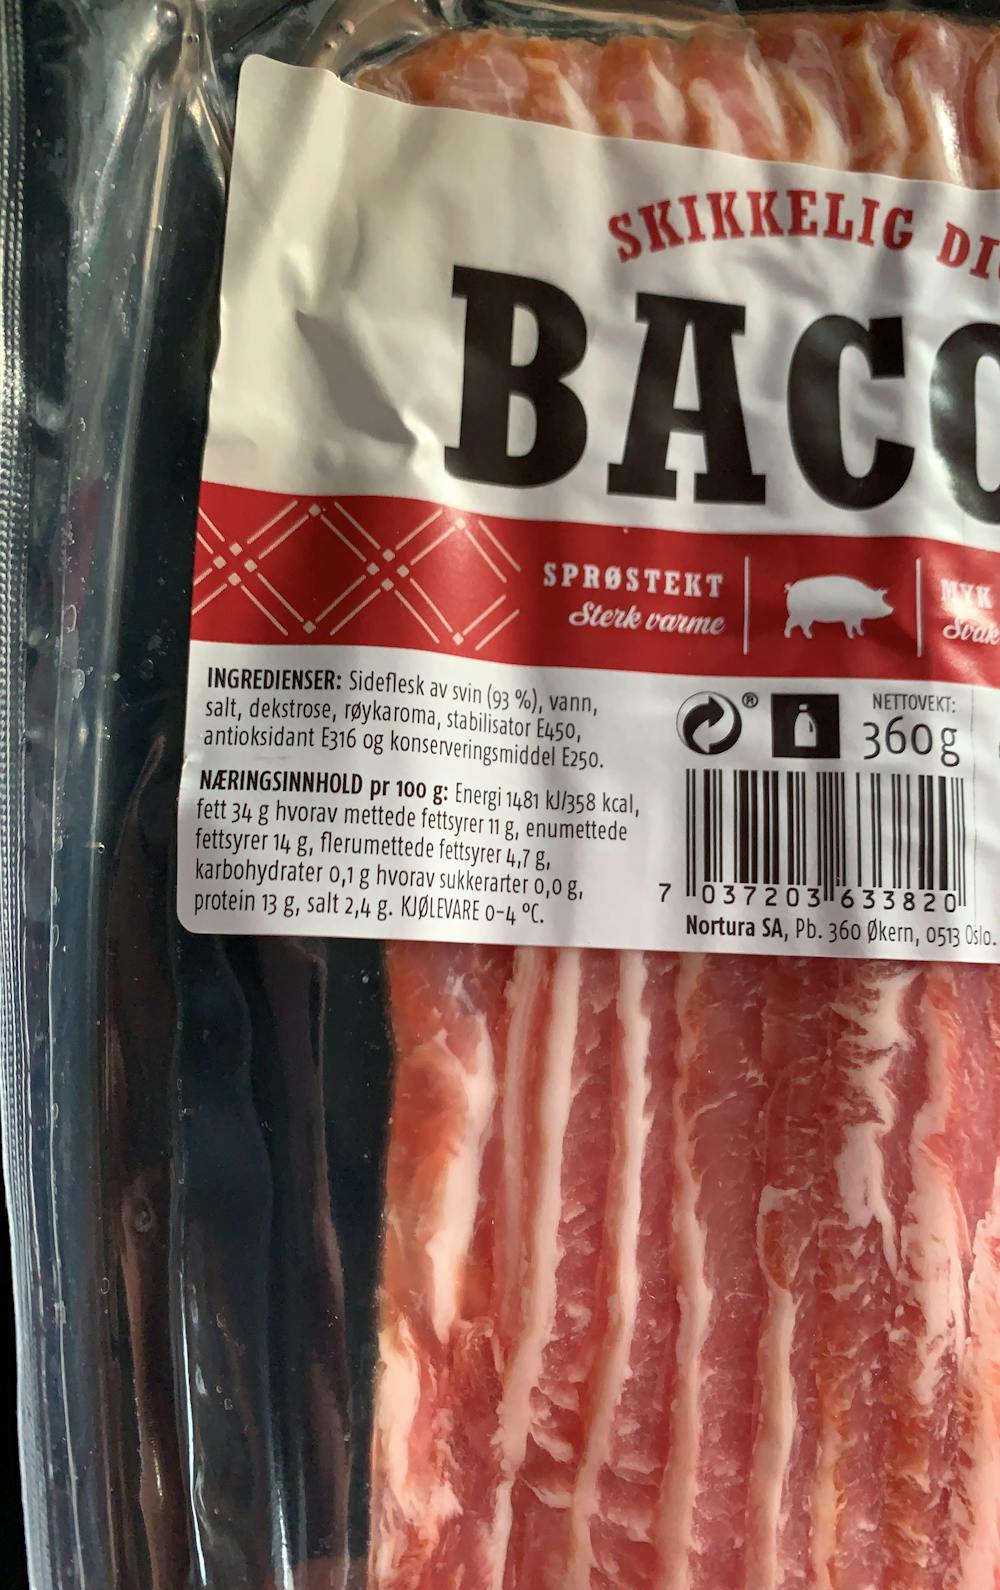 Ingredienslisten til Skikkelig digg bacon